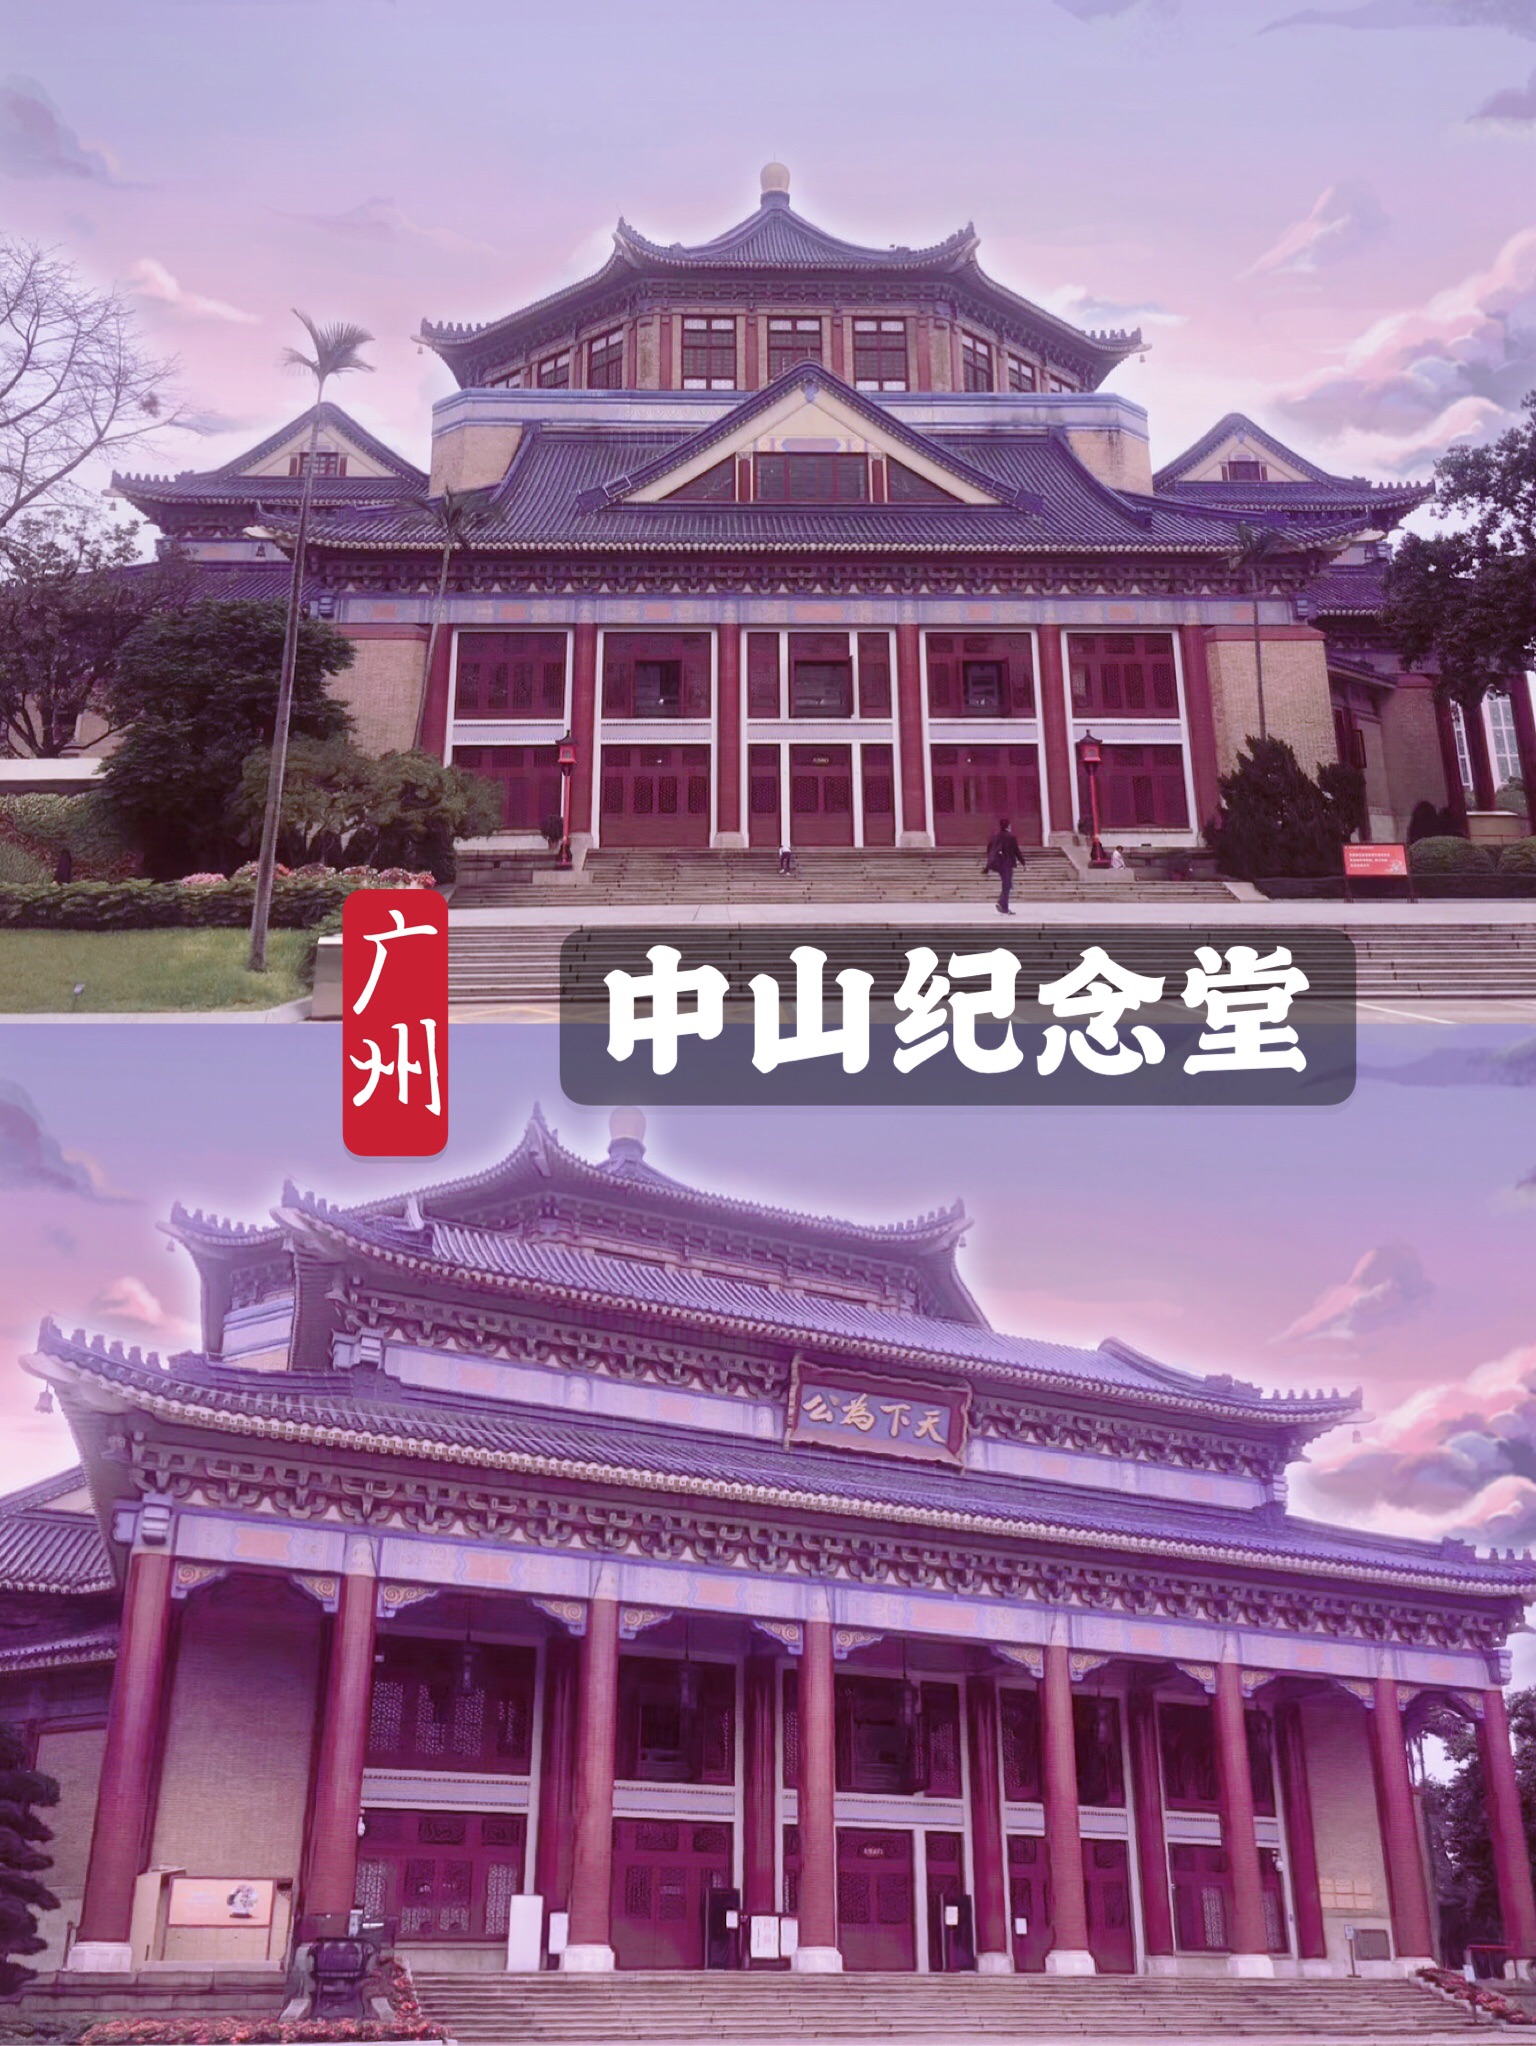 广州｜刷爆朋友圈特显艺术高贵气质的宫殿式建筑-中山纪念堂